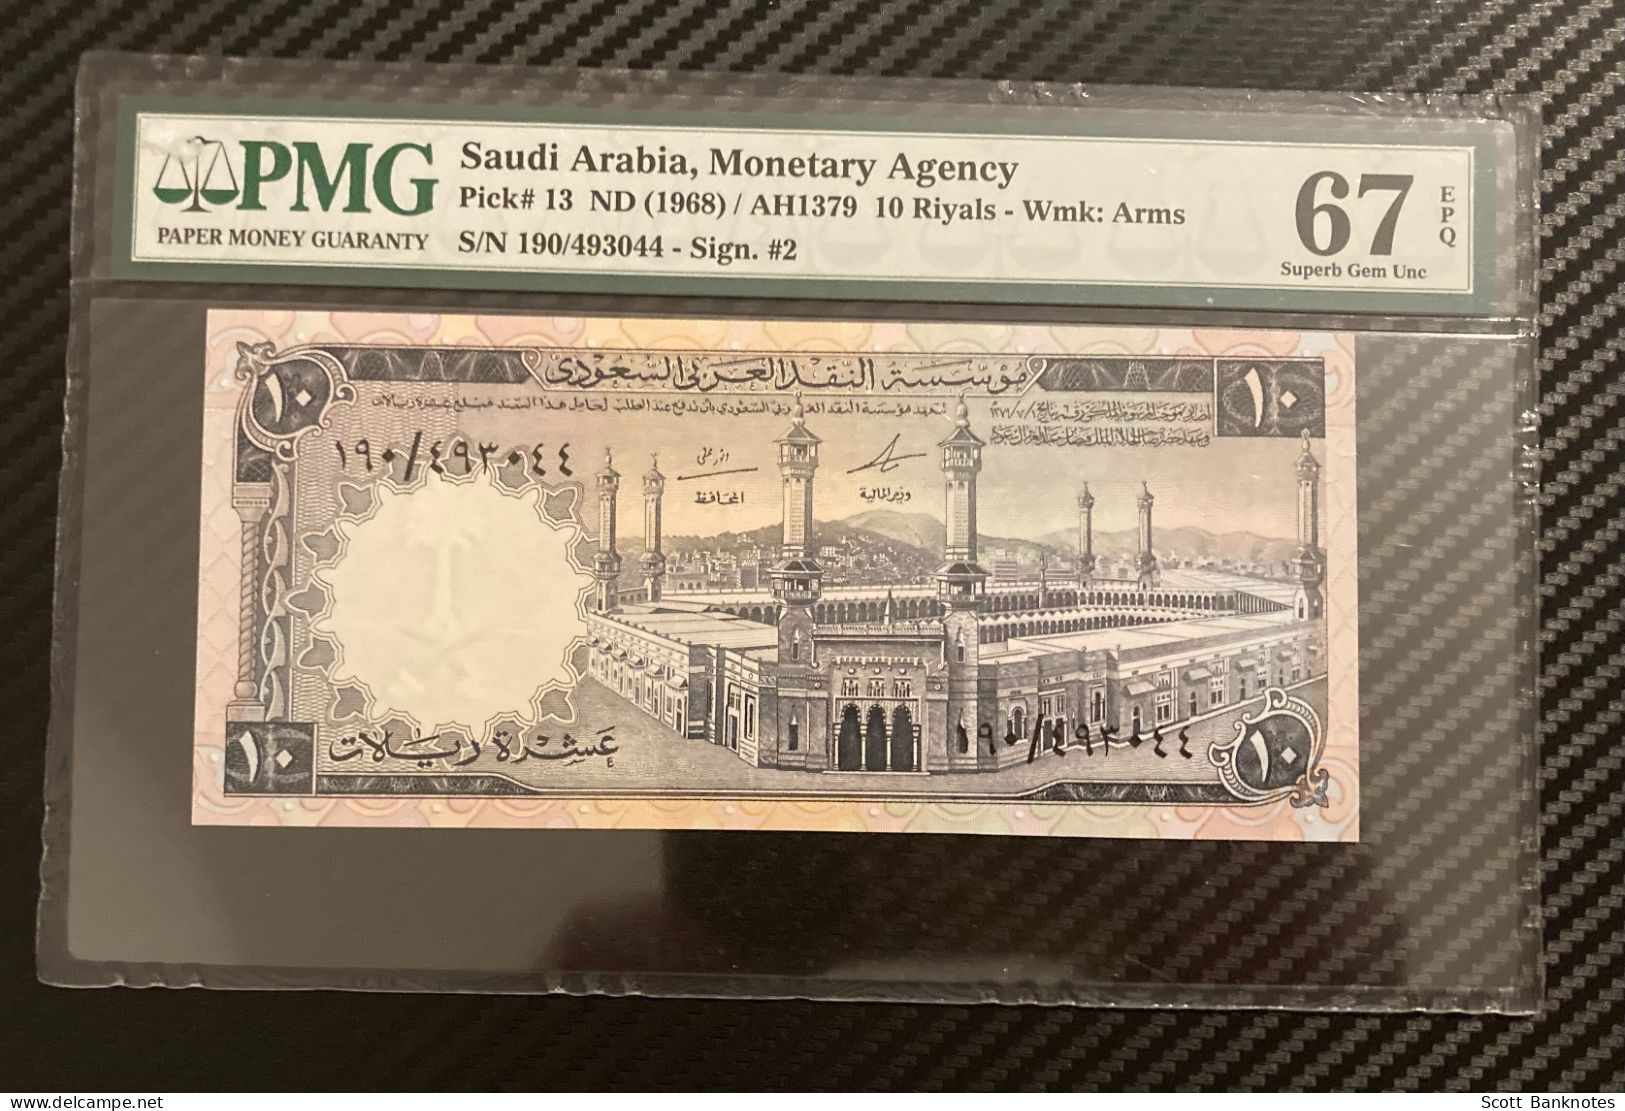 1968, PMG 67 Superb Gem Unc, Saudi Arabia 10 Riyals, Wmk Arms, Pick 13, SN 190 493044 - Saudi Arabia